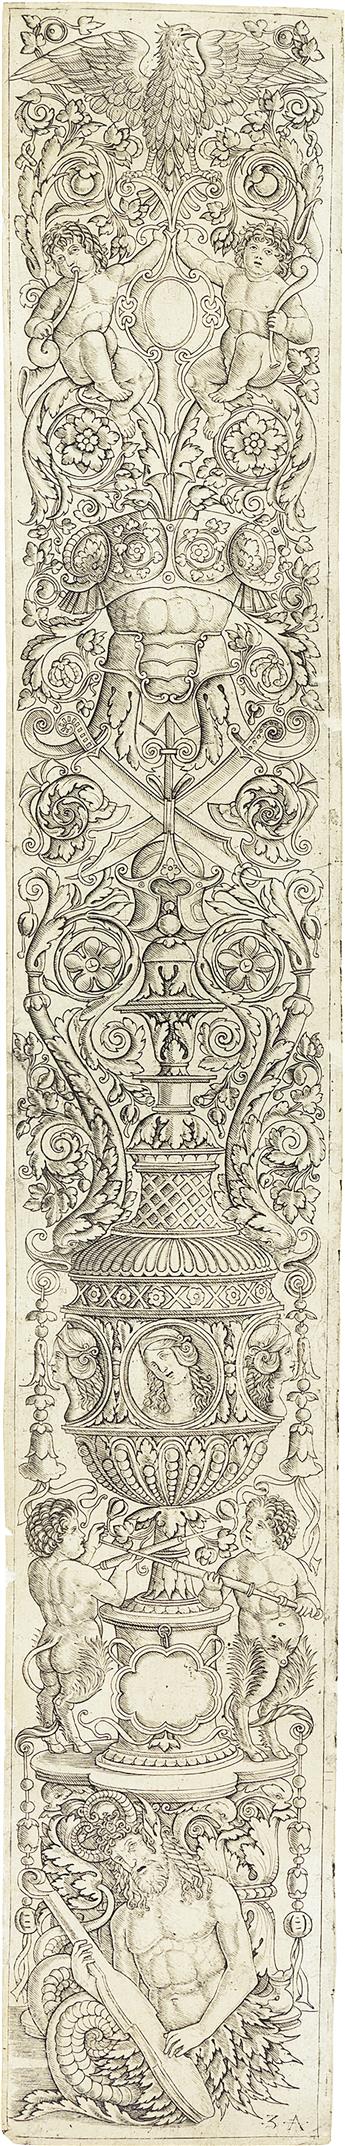 GIOVANNI ANTONIO DA BRESCIA, CALLED ZOAN ANDREA (after Giovanni Pietro da Birago) Two ornamental panel engravings